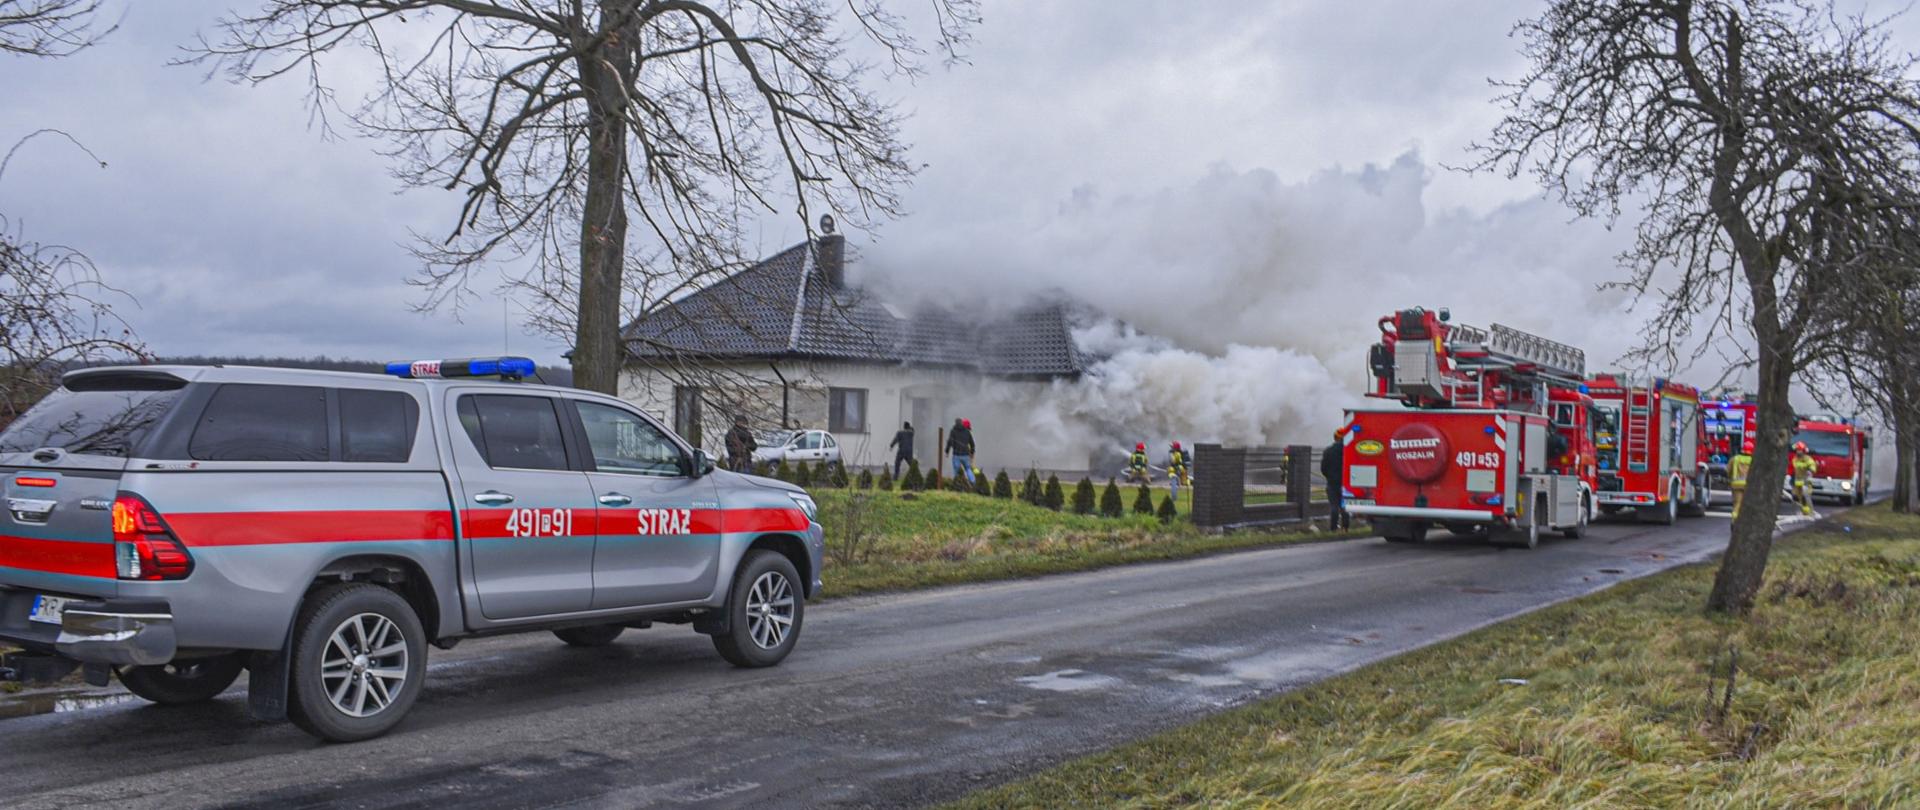 Zdjęcie przedstawia pożar budynku jednorodzinnego, wydobywający się dym ogranicza widoczność i utrudnia działania gaśnicze. Strażacy podawają dwa prądy wody w natarciu na palący się obiekt.